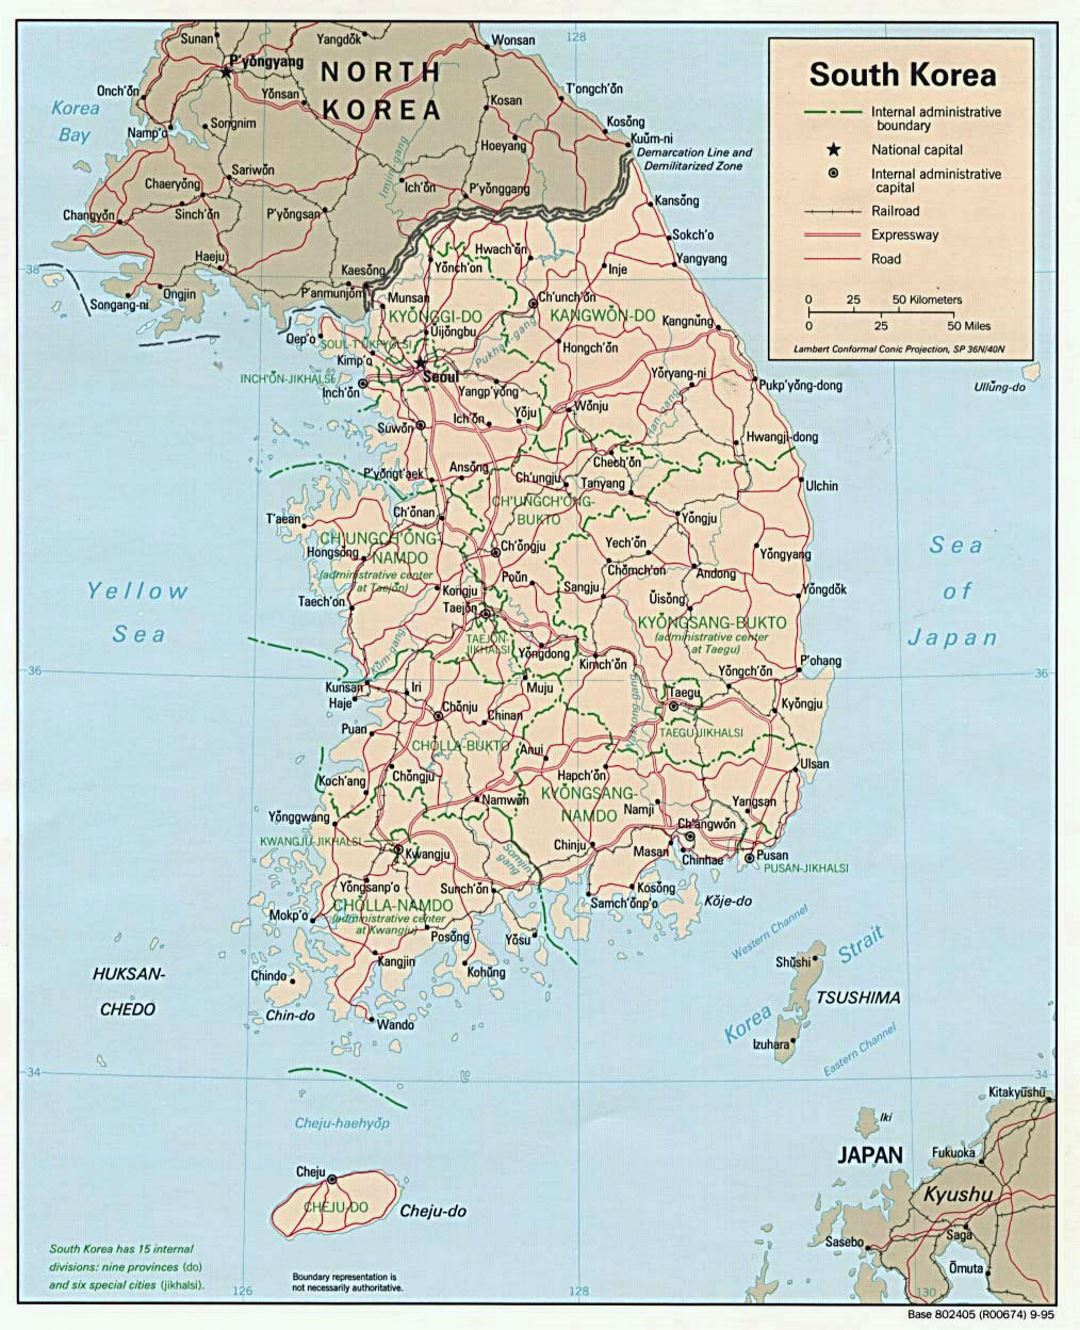 Detallado mapa político y administrativo de Corea del Sur con carreteras, ferrocarriles y principales ciudades - 1995